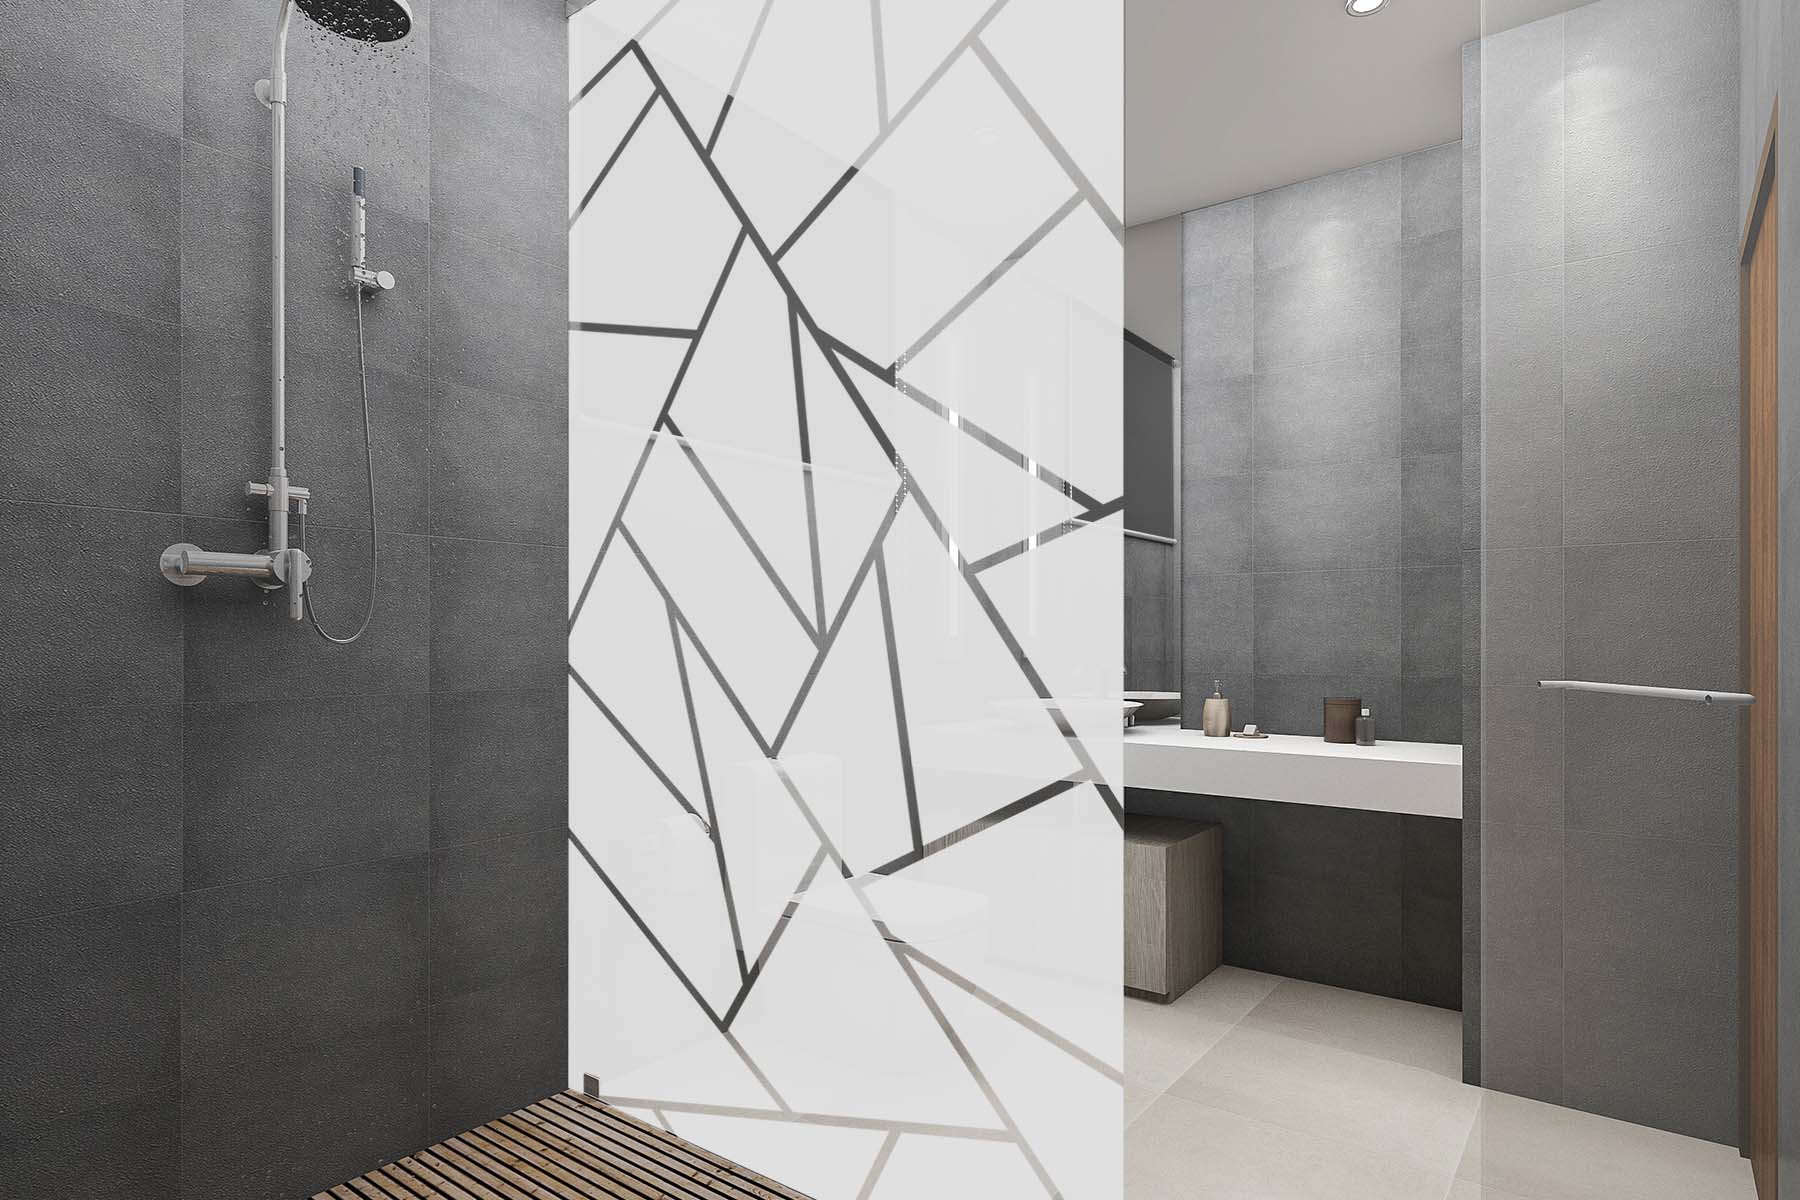 Duschwand mit geometrischem Muster als Walk-in-Dusche im Badezimmer mit grauen Fliesen